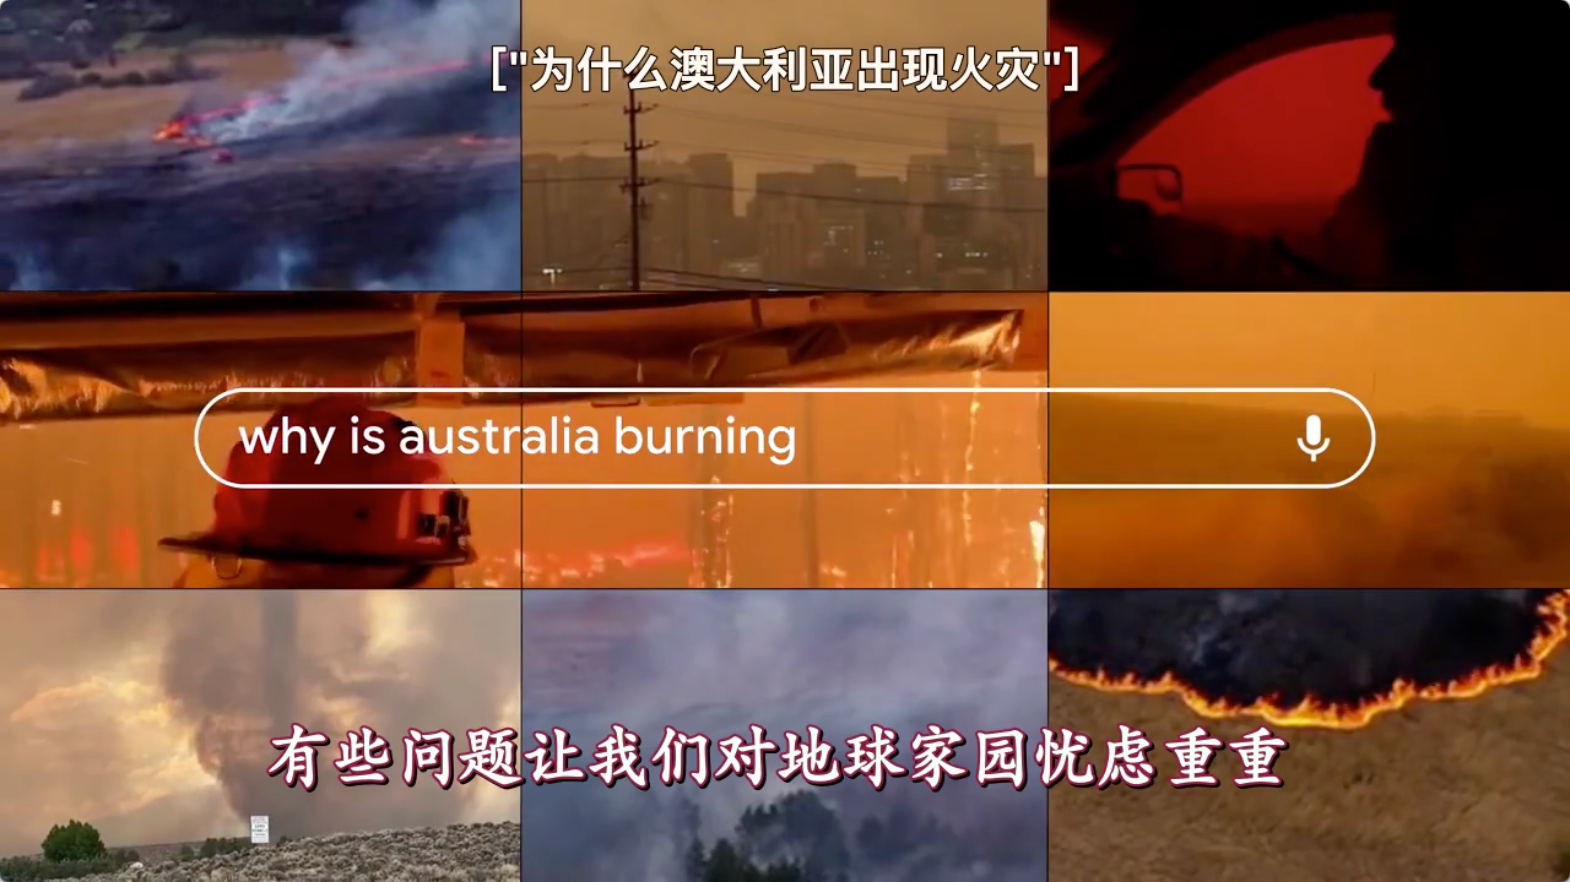 「为什么澳大利亚出现火灾」「为什么厕纸售罄了」这些问题直接